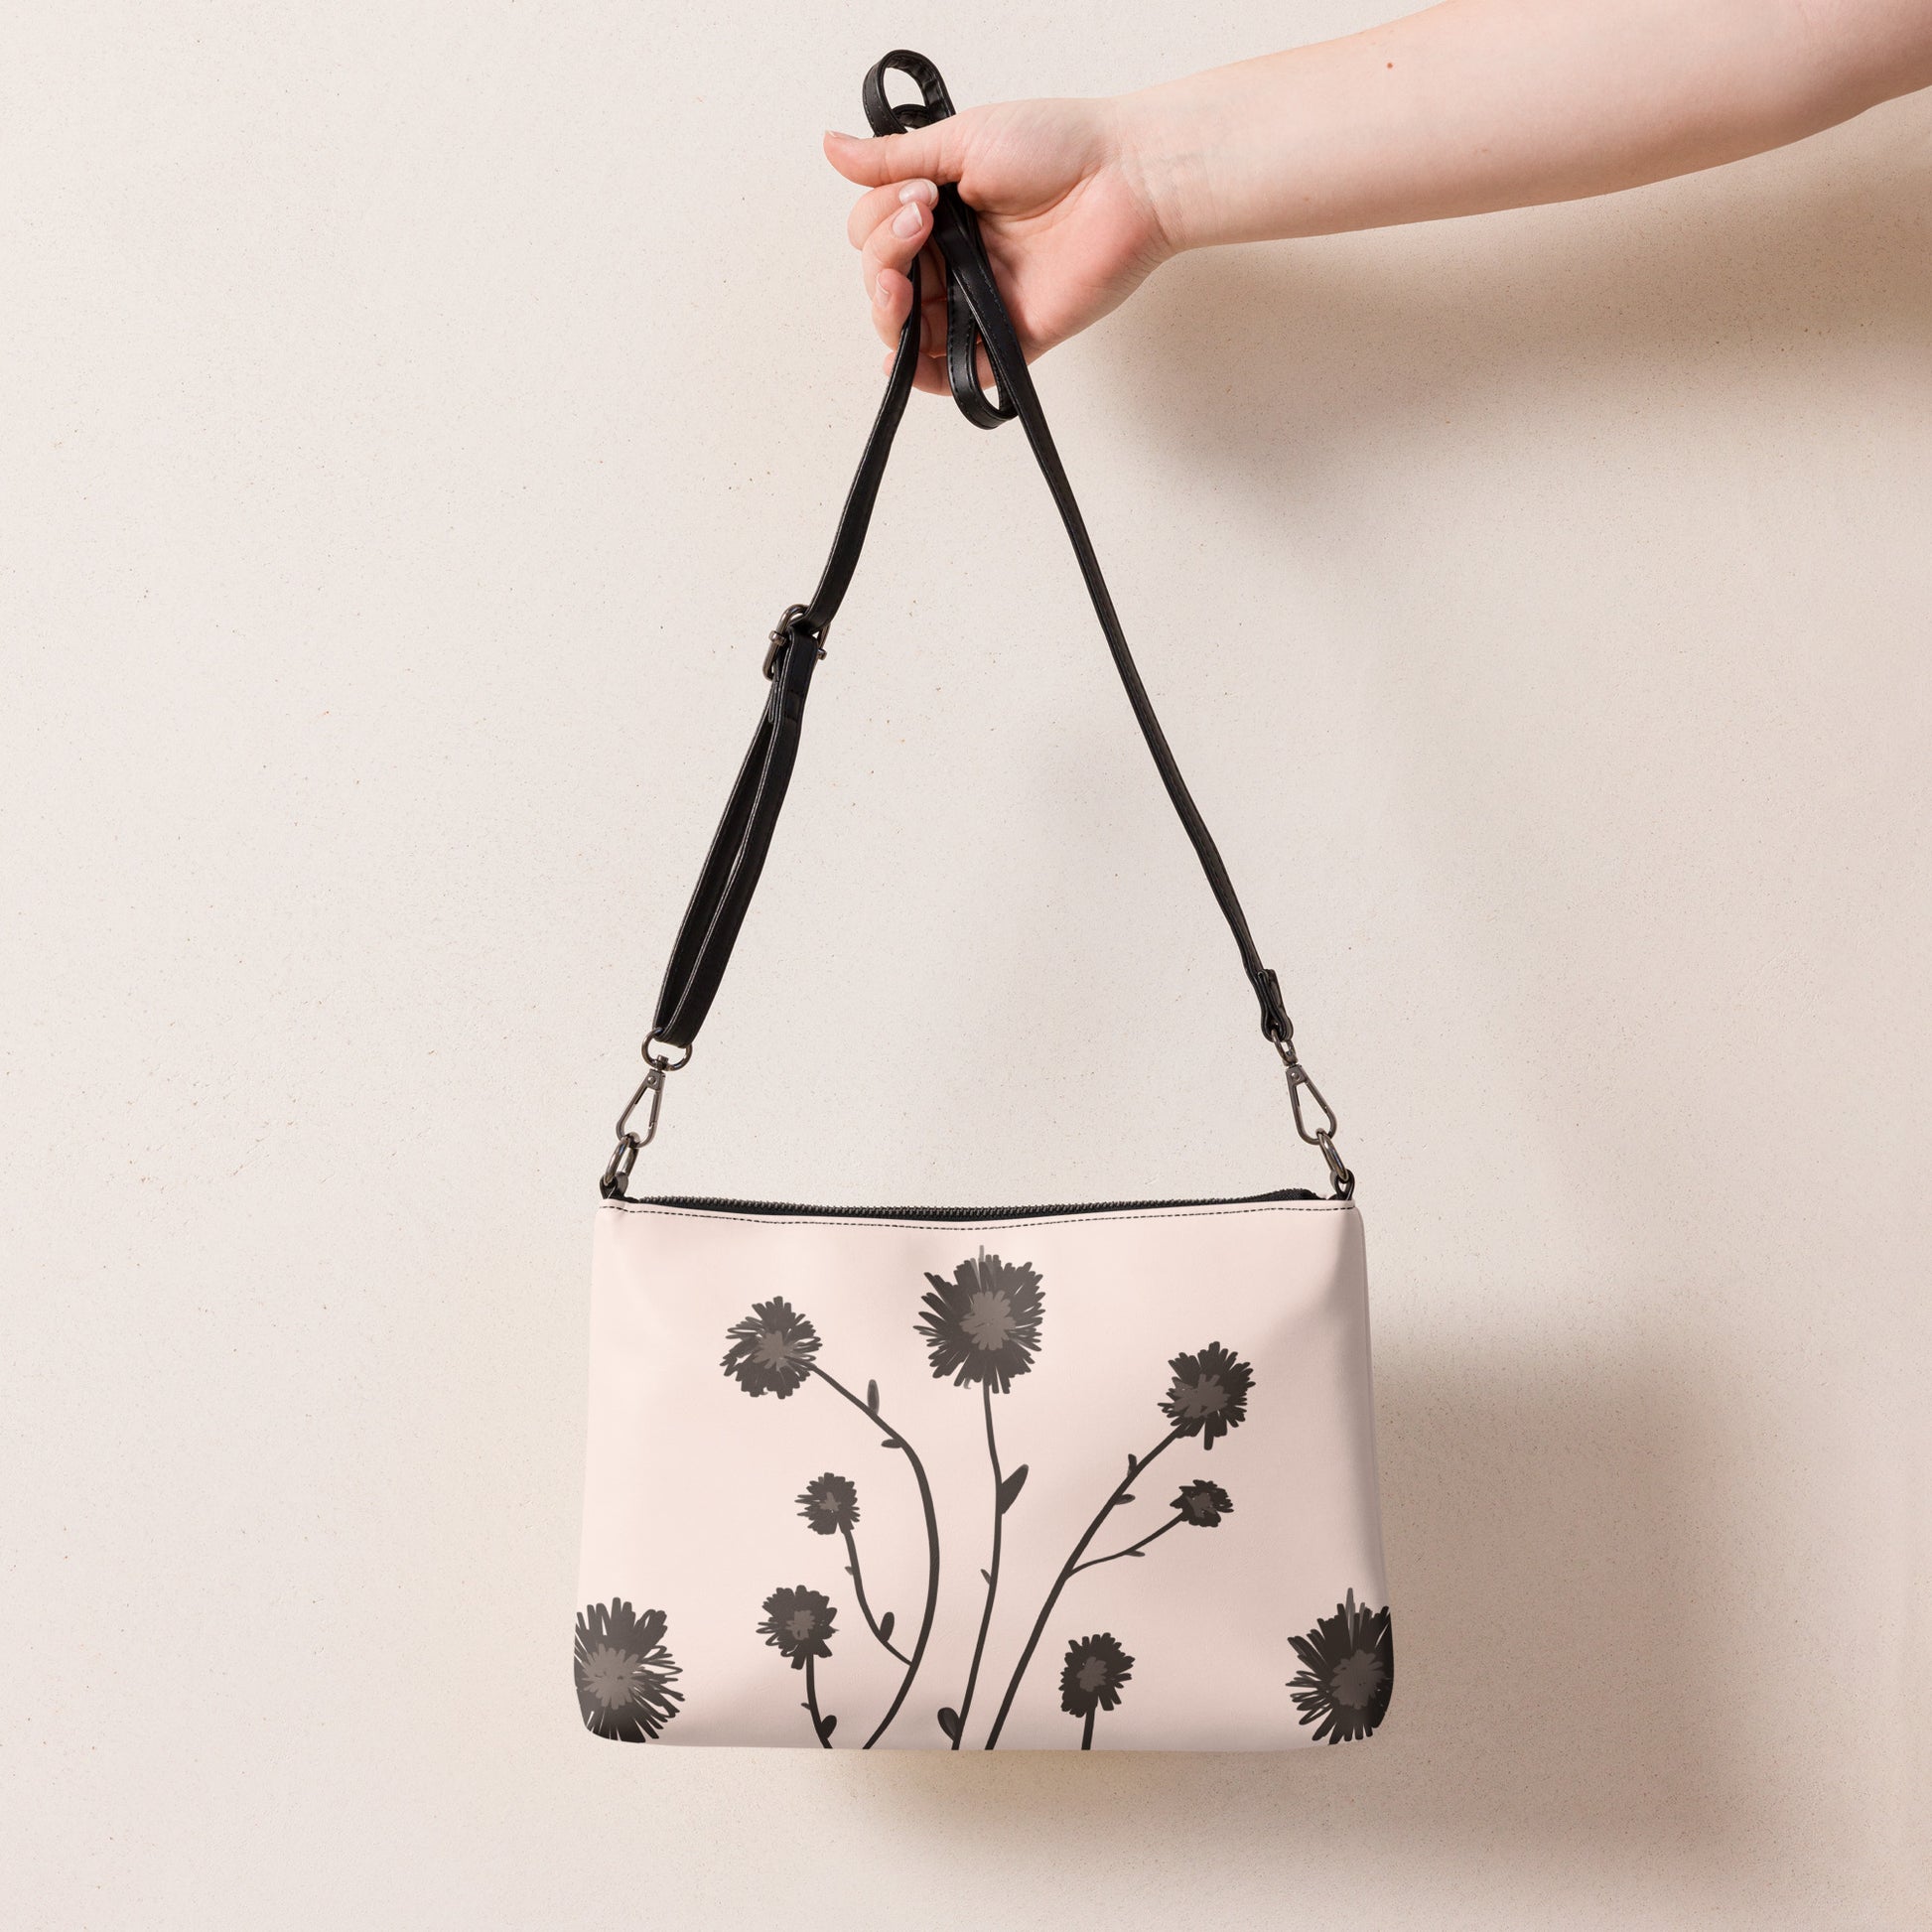 Floral Boho Crossbody bag by Emmy Spoon